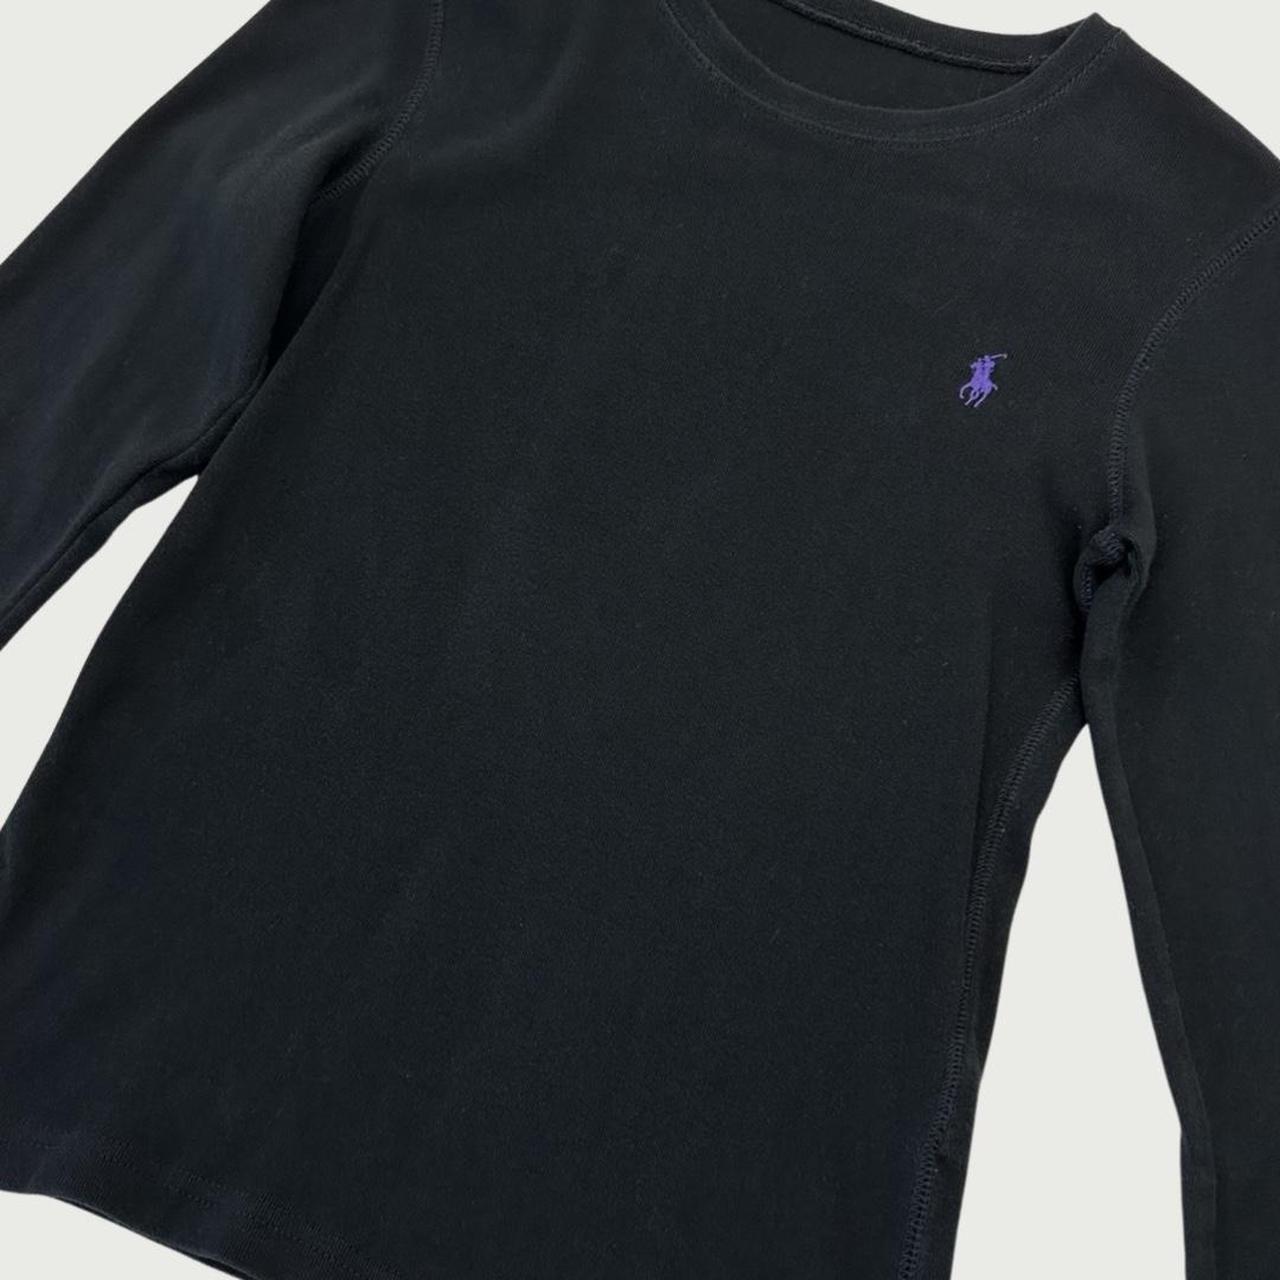 Polo Ralph Lauren Women's Black T-shirt (3)